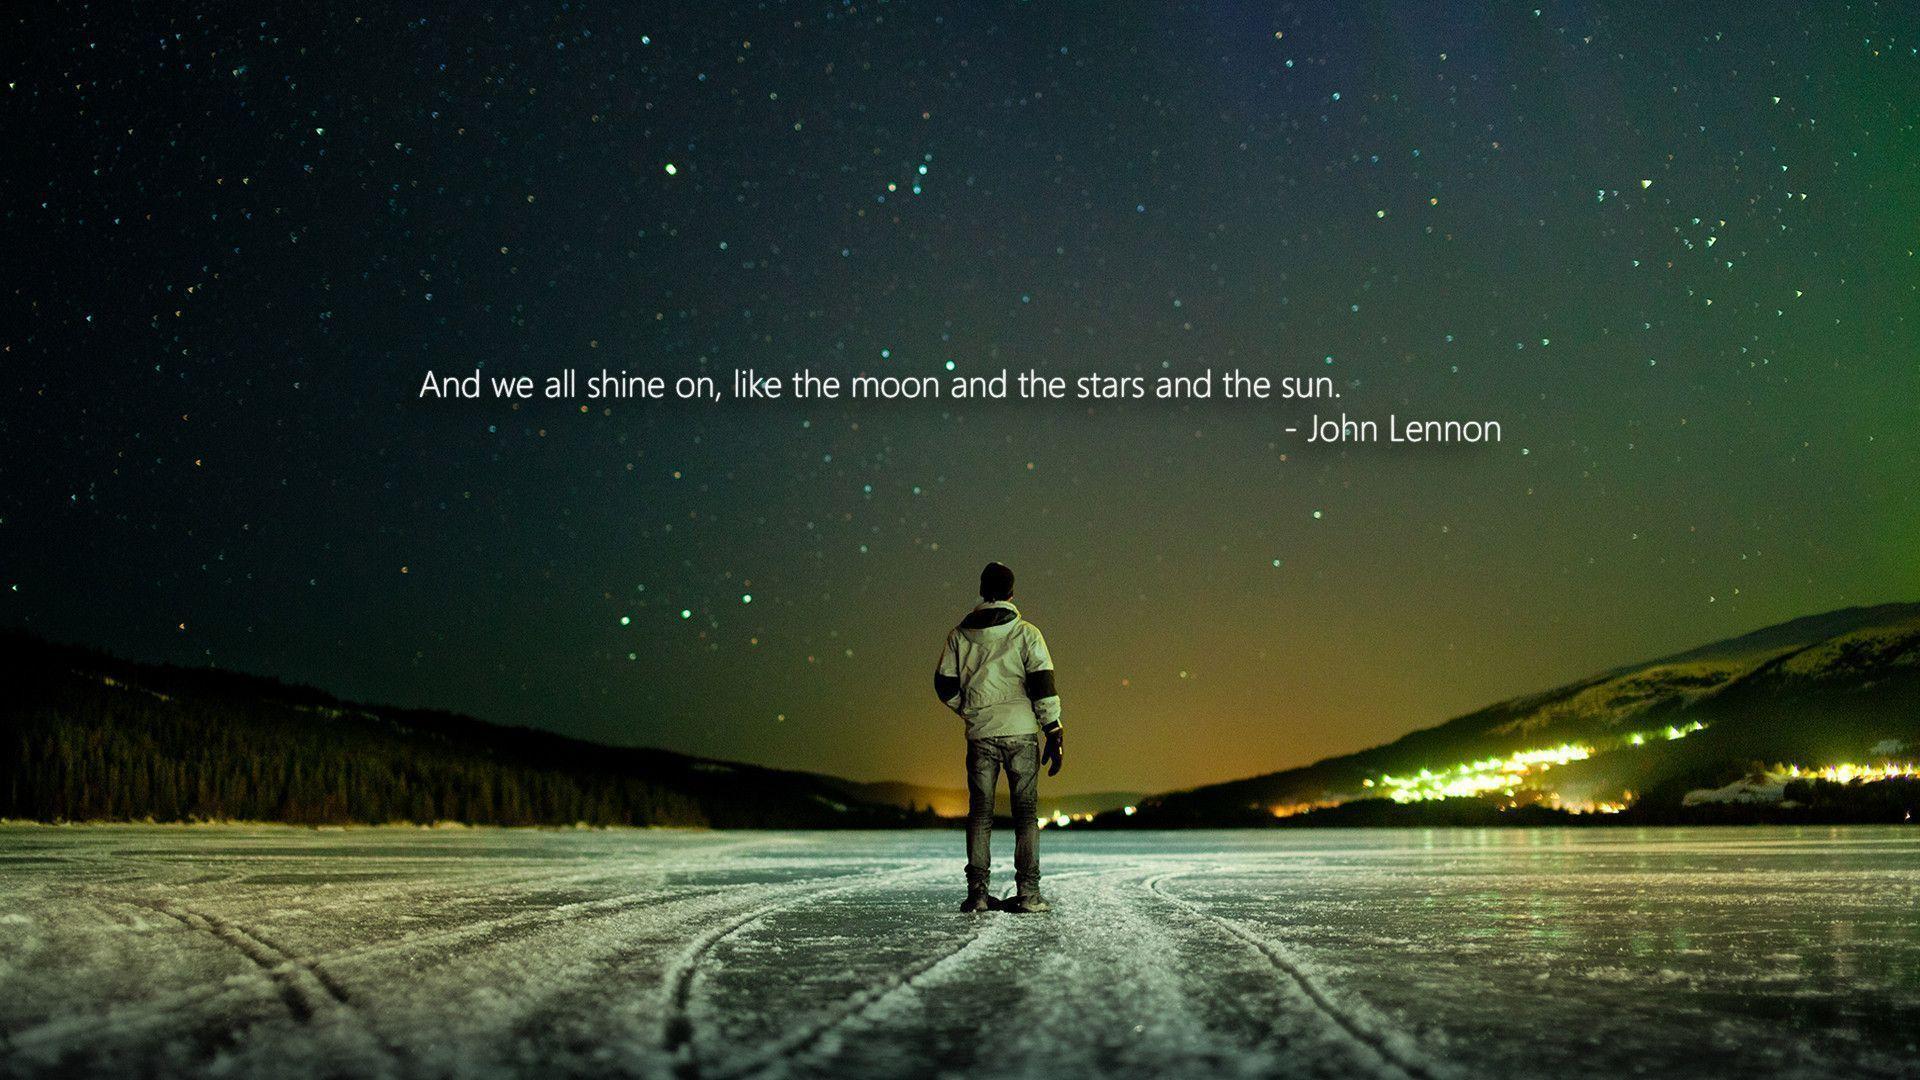 John Lennon quote Wallpaper #